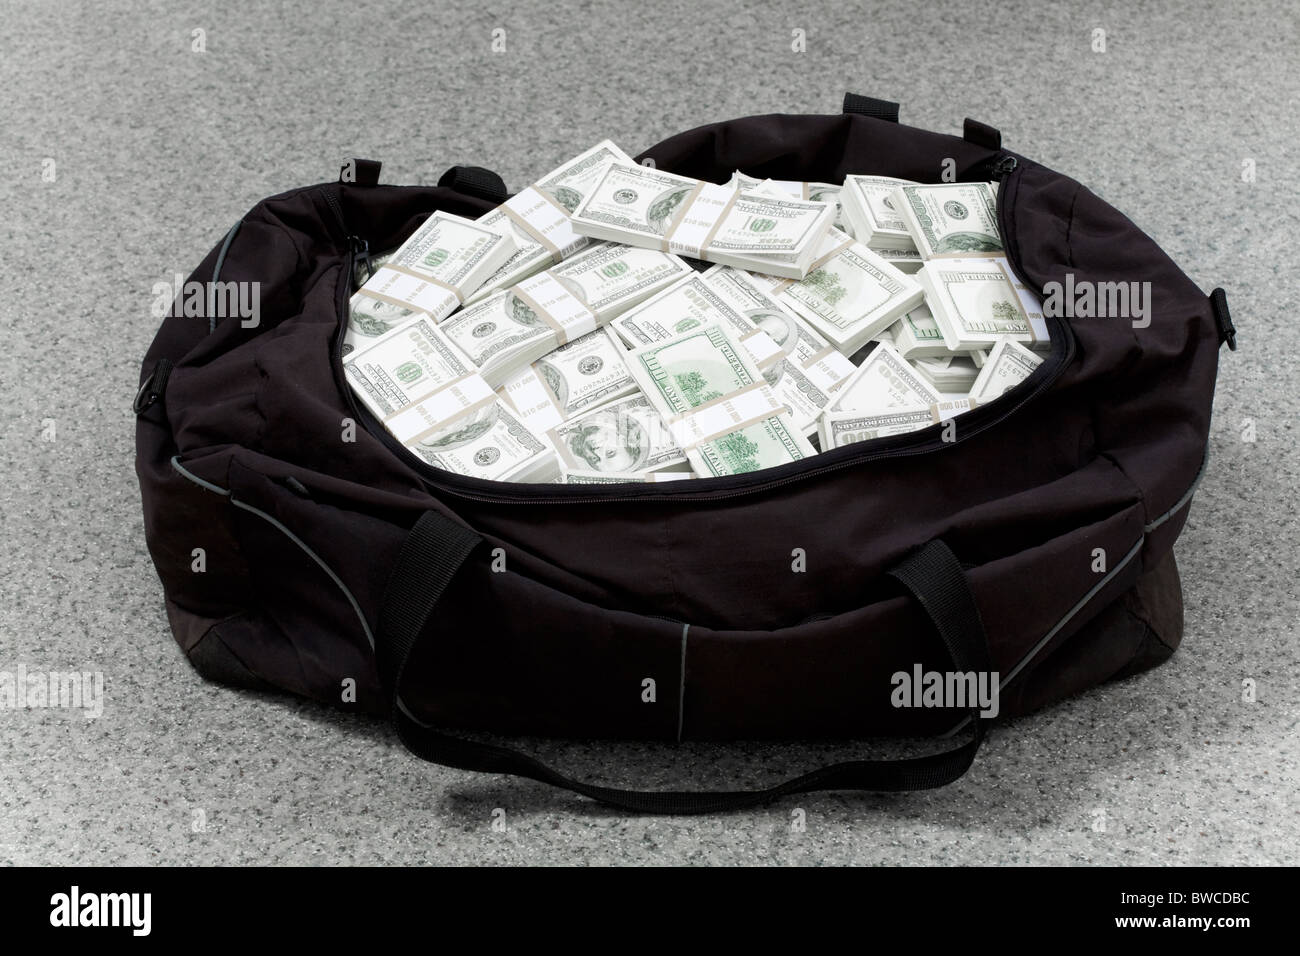 Image de grand sac plein de dollars américains sur le sol Banque D'Images